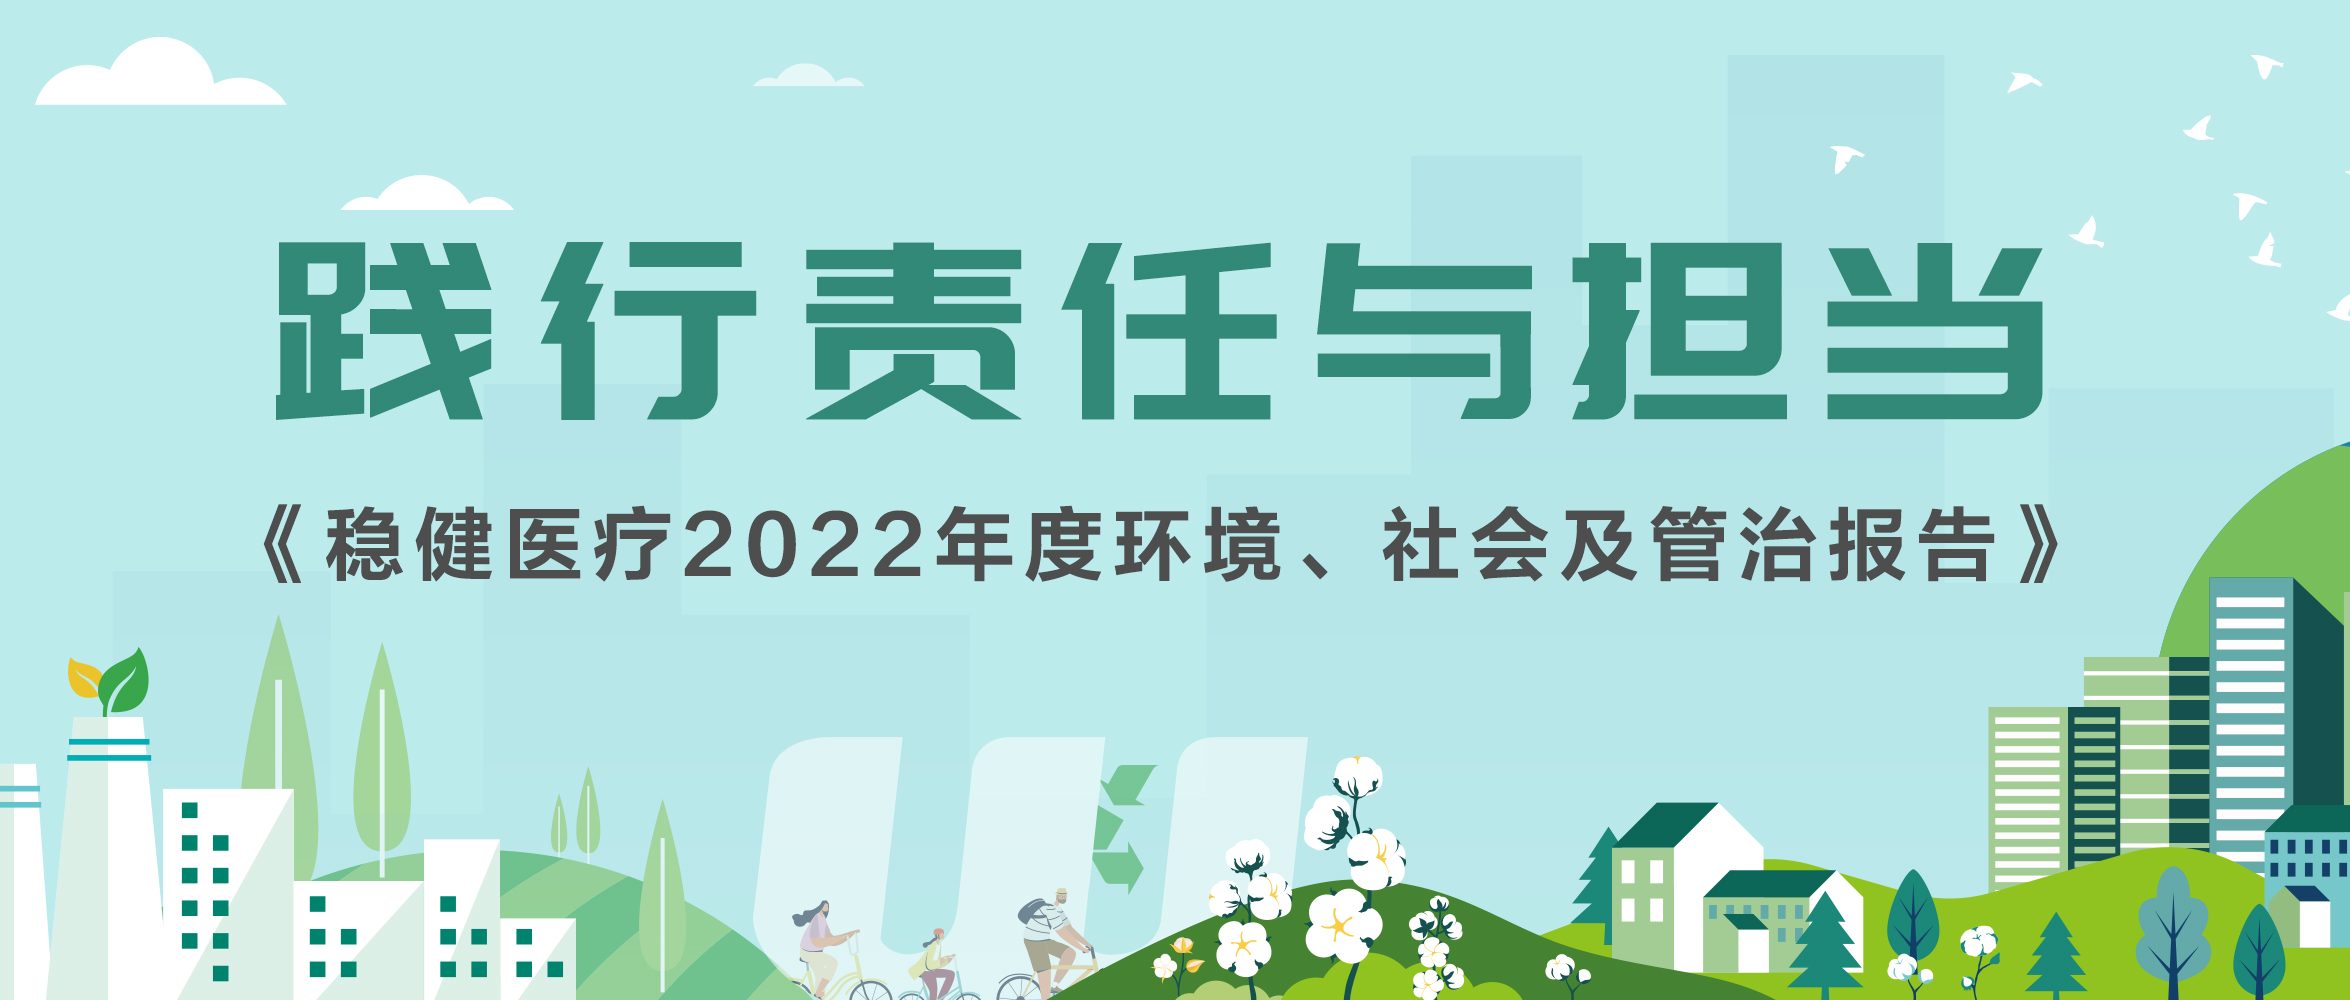 尊龙凯时医疗2022年ESG报告发布